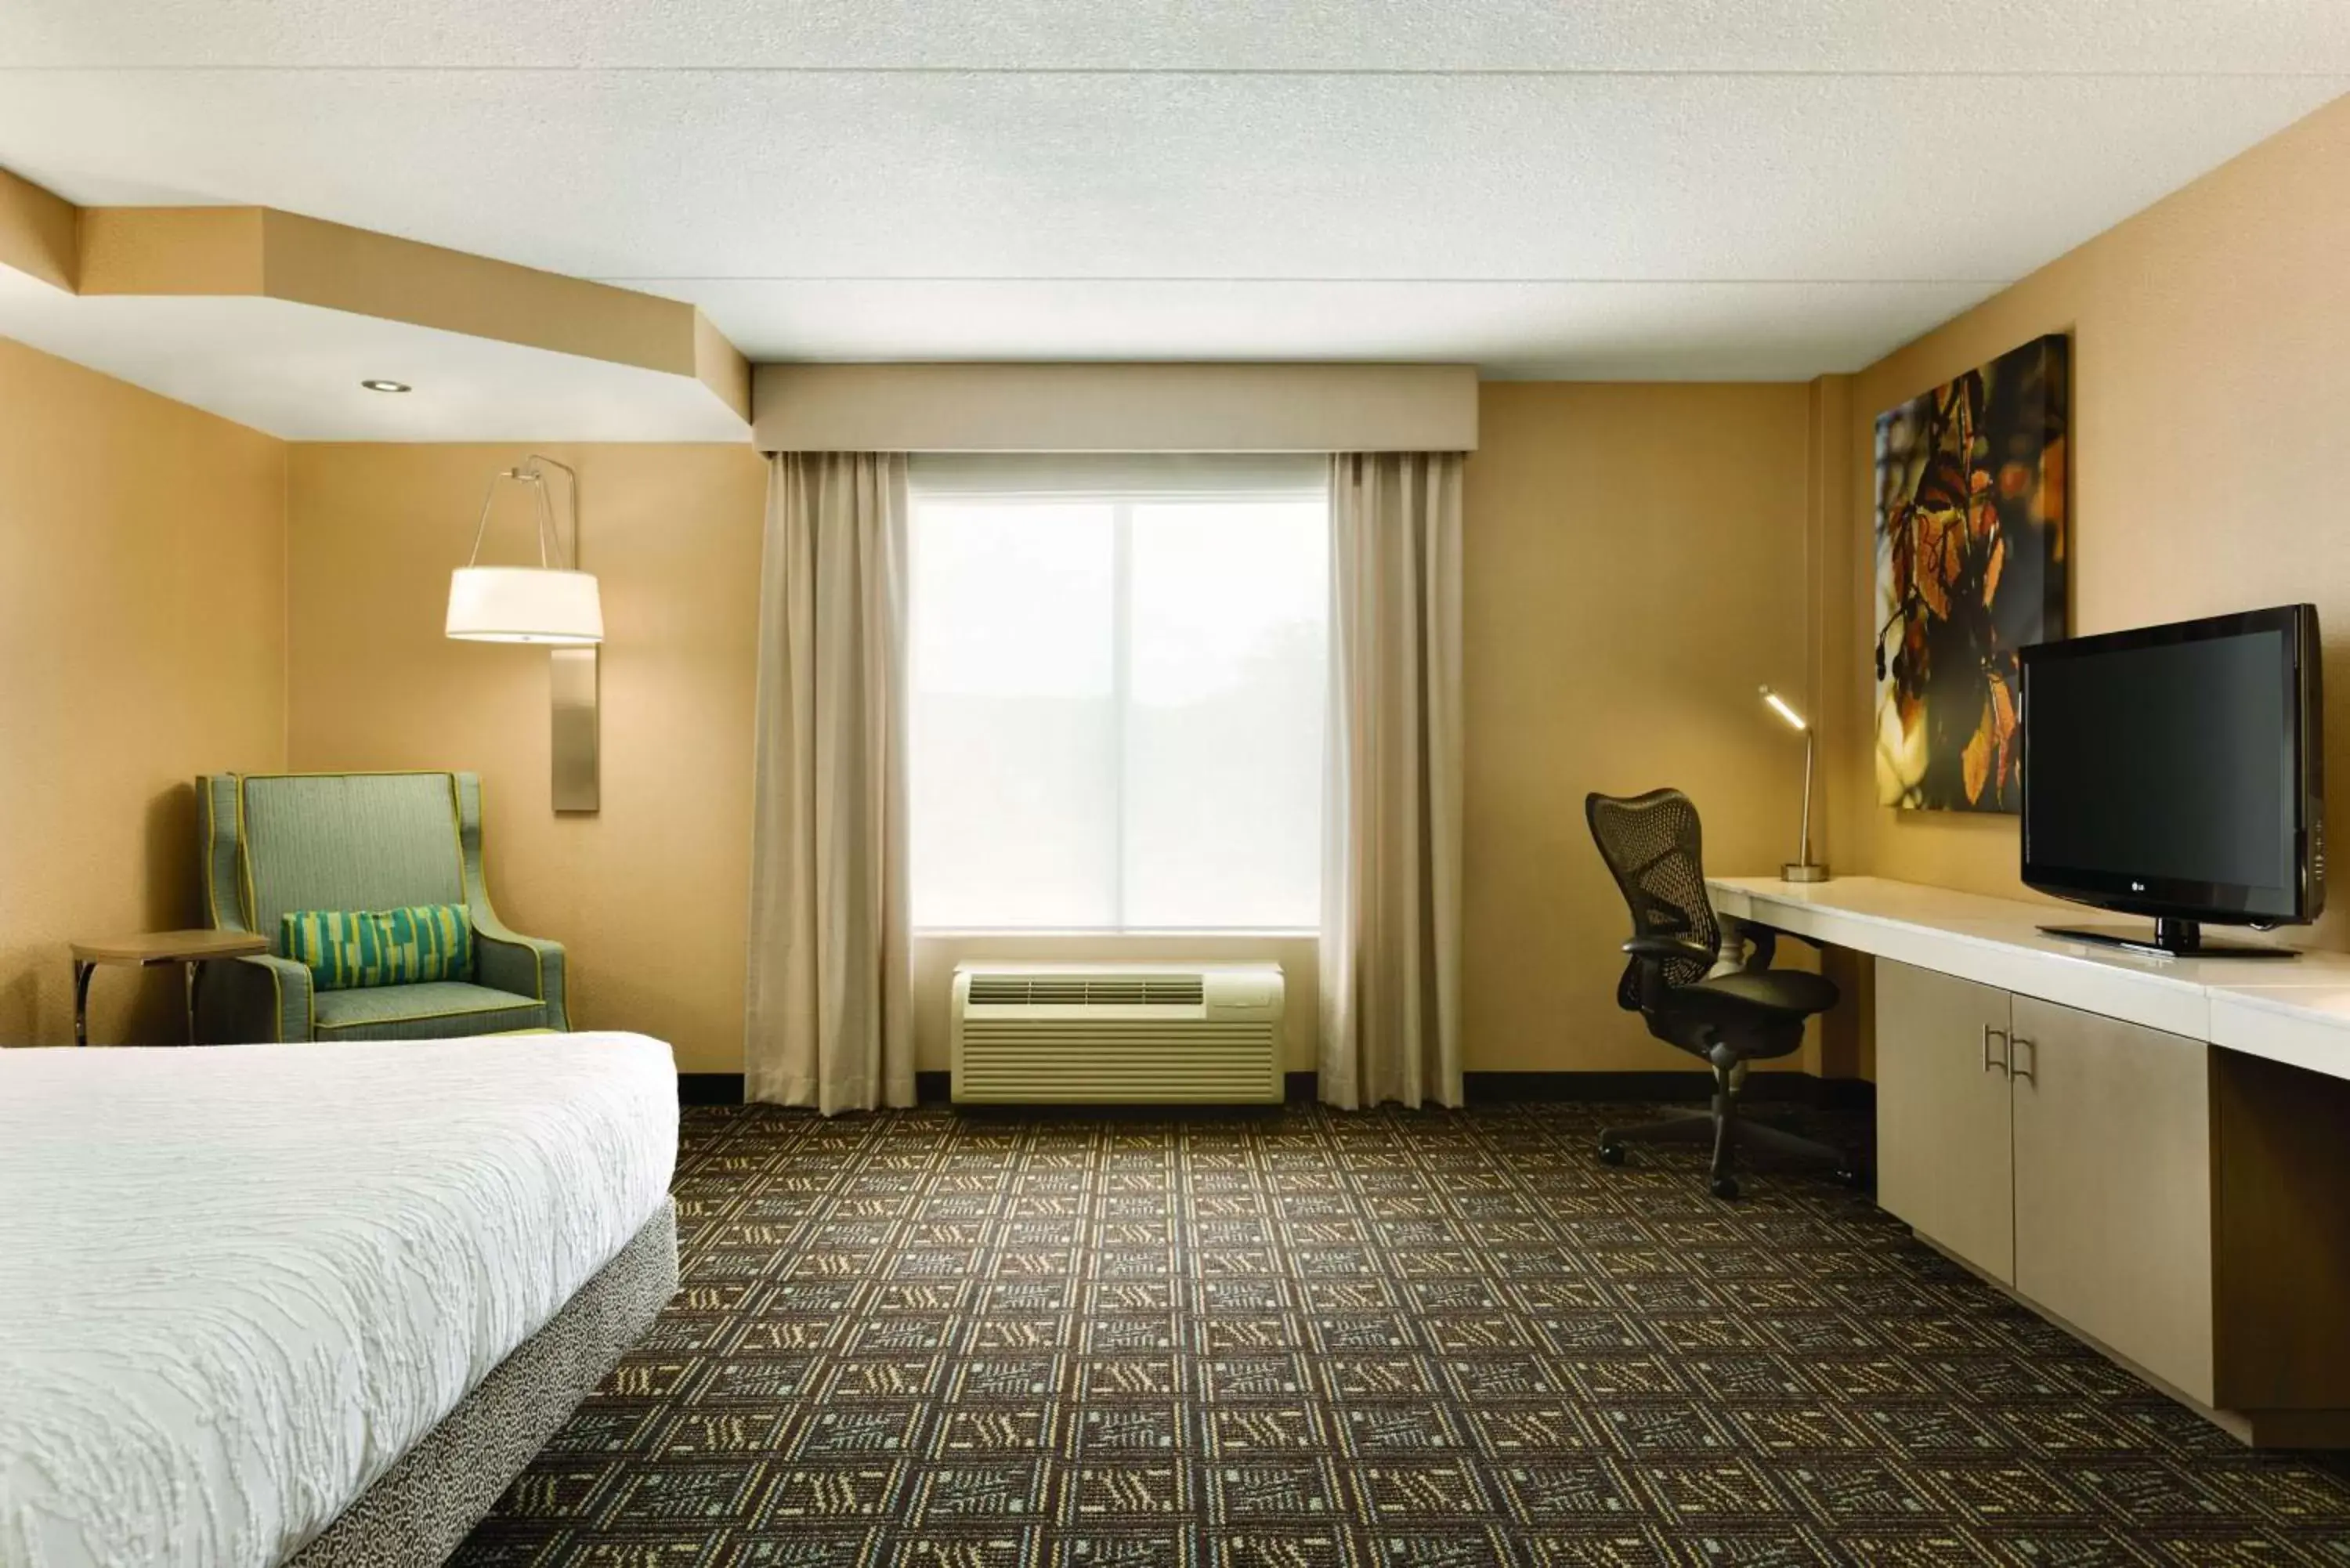 Bedroom, TV/Entertainment Center in Hilton Garden Inn Niagara-on-the-Lake